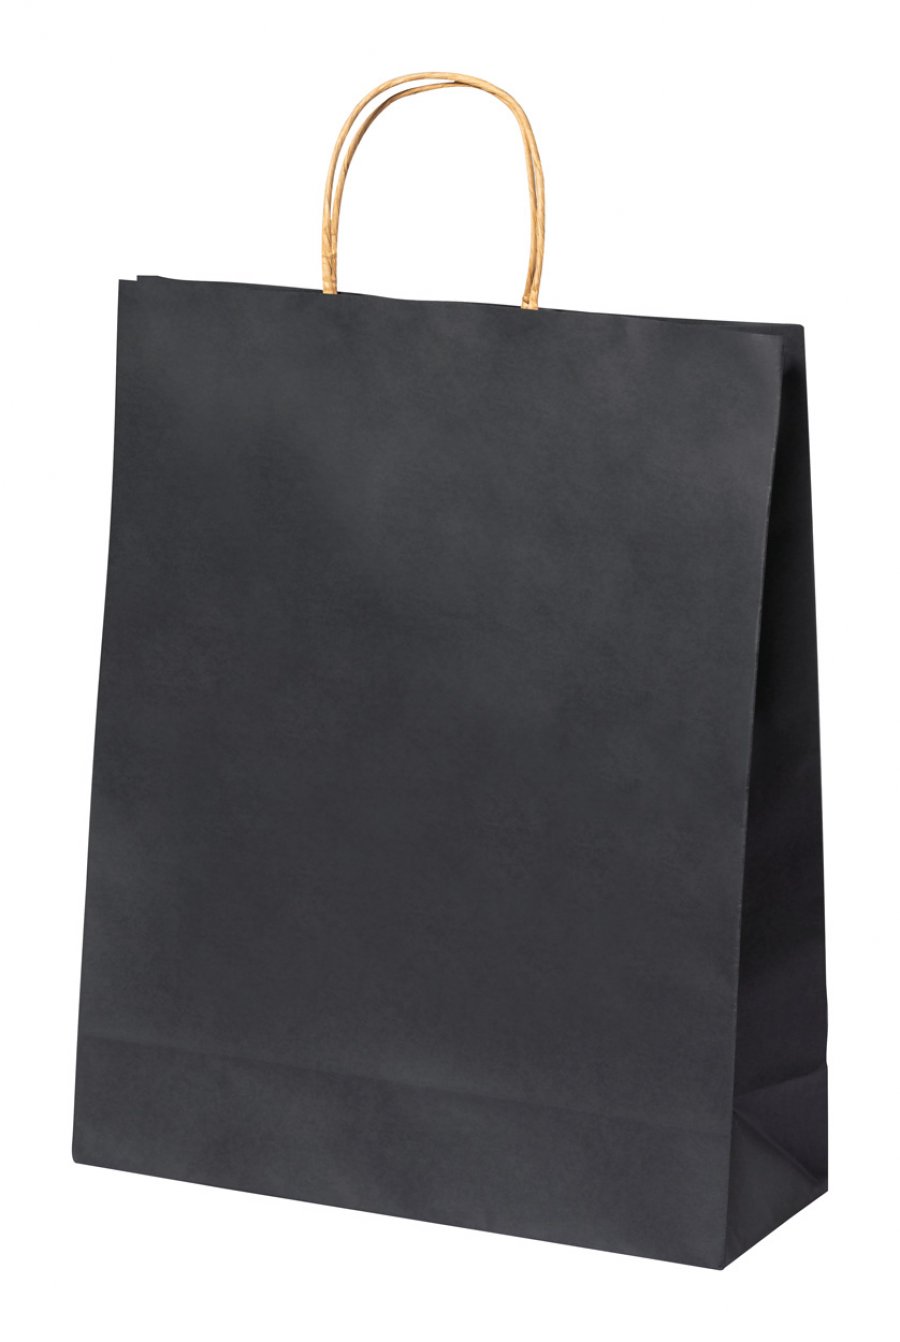 "Linel" papírová taška, černá